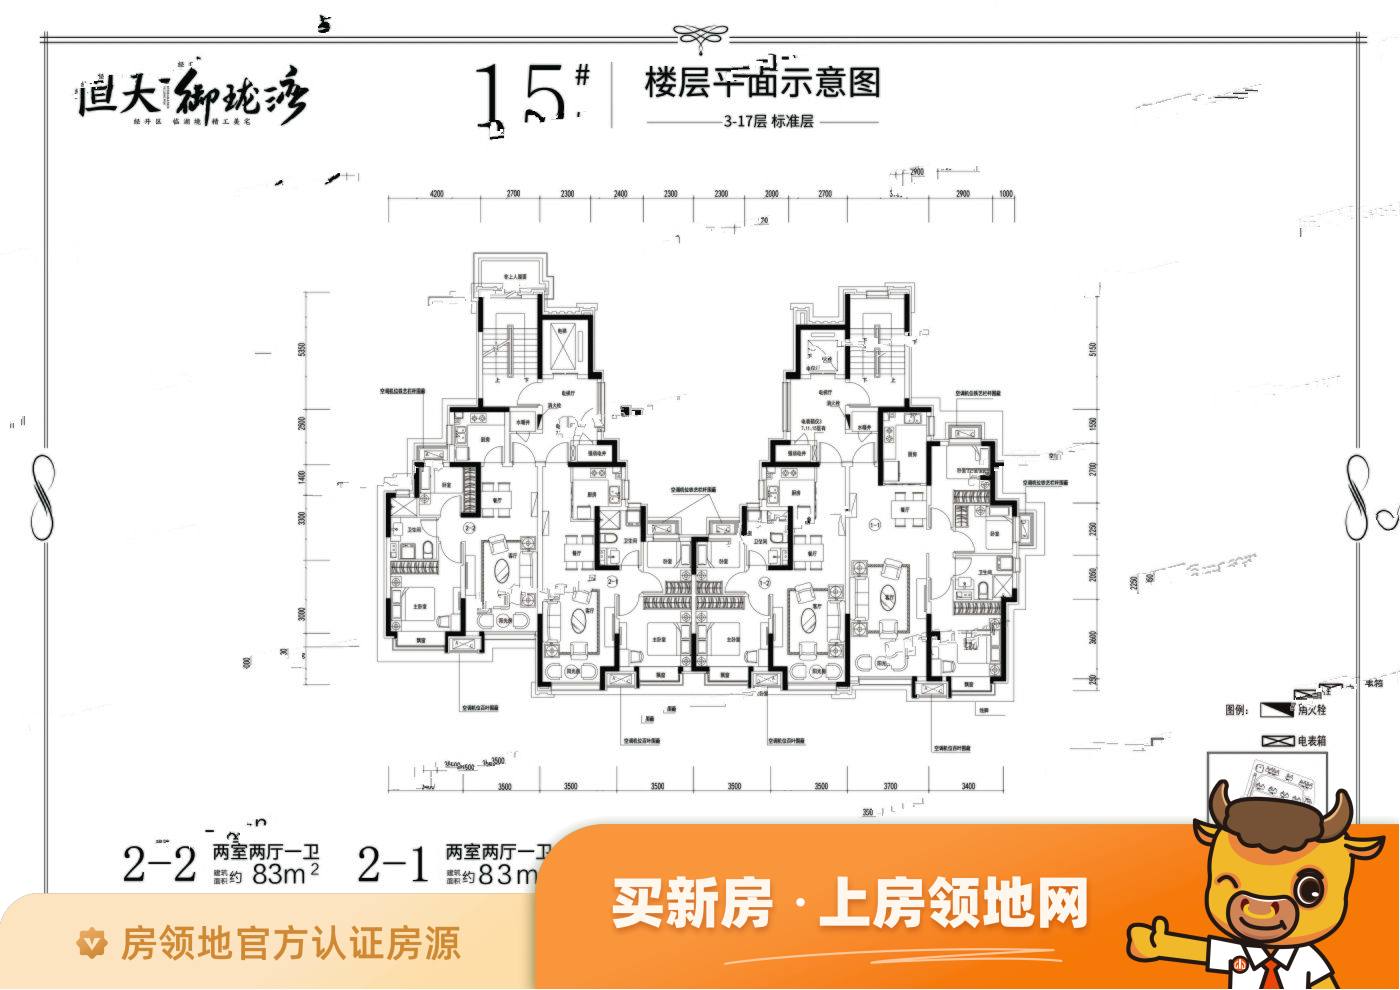 沈阳恒大时代锦城规划图4